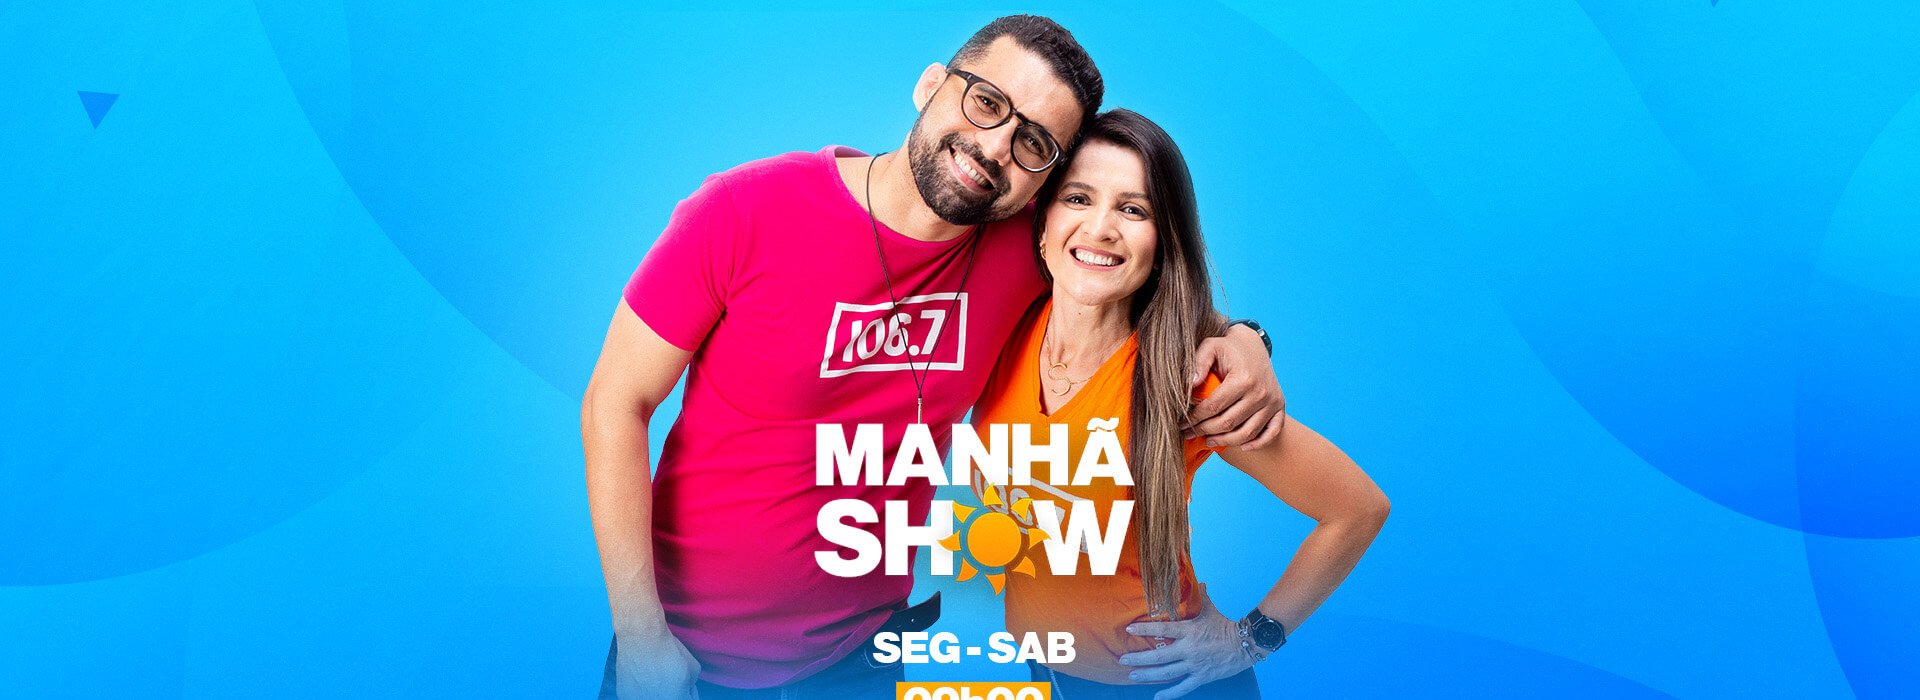 Slider-Manha-Show (1)